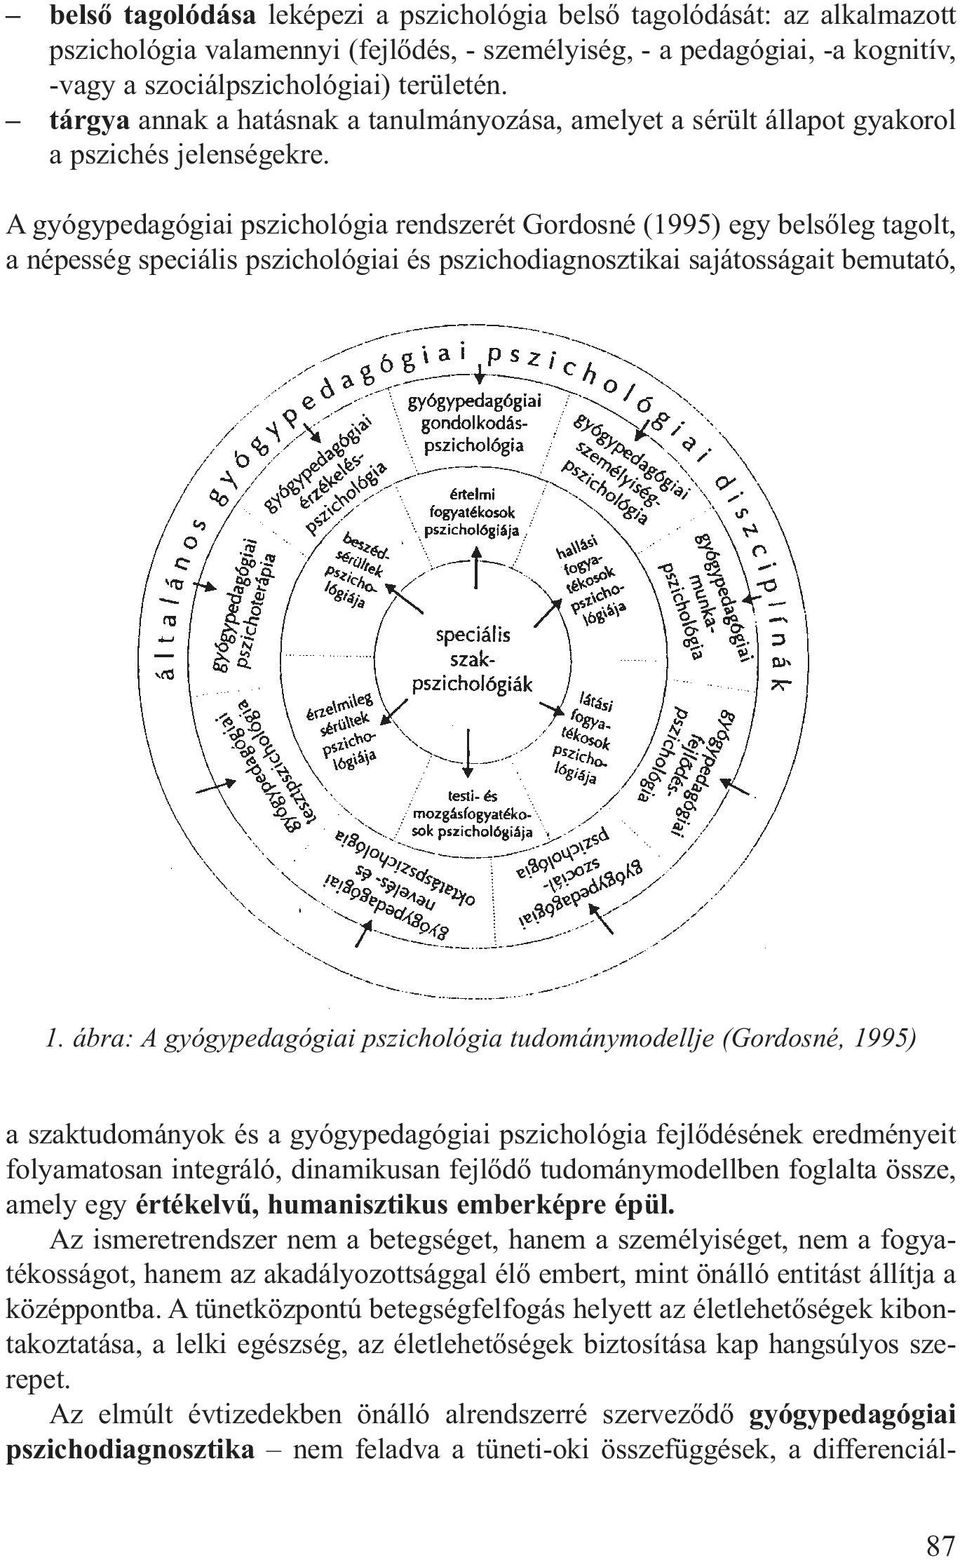 A gyógypedagógiai pszichológia rendszerét Gordosné (1995) egy belsőleg tagolt, a népesség speciális pszichológiai és pszichodiagnosztikai sajátosságait bemutató, 1.